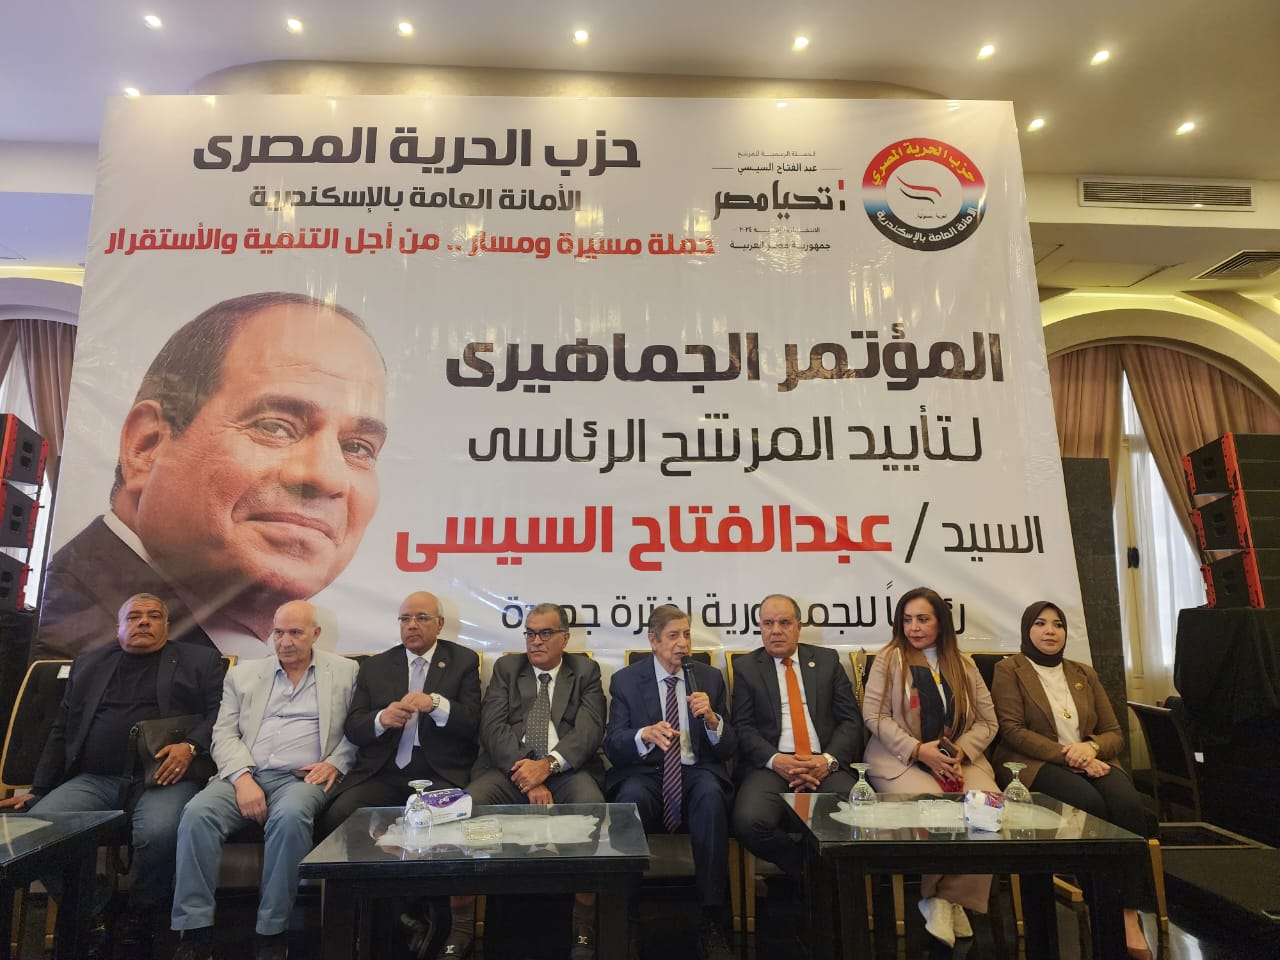 قيادات حزب الحرية المصري ومشاركة للشخصيات العامة